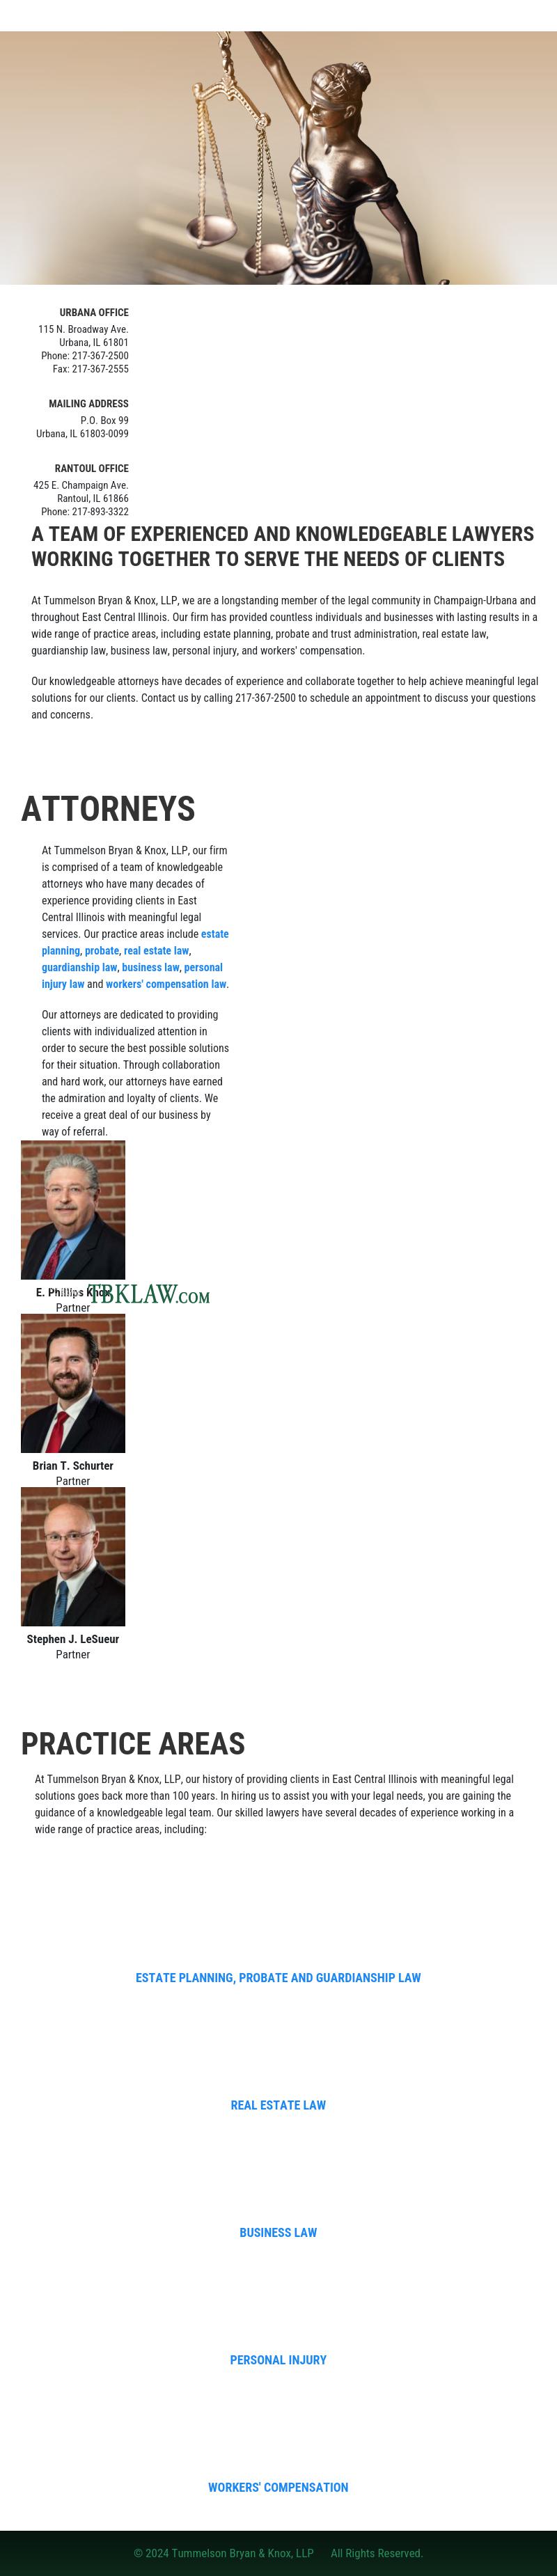 Tummelson, Bryan & Knox, LLP - Urbana IL Lawyers